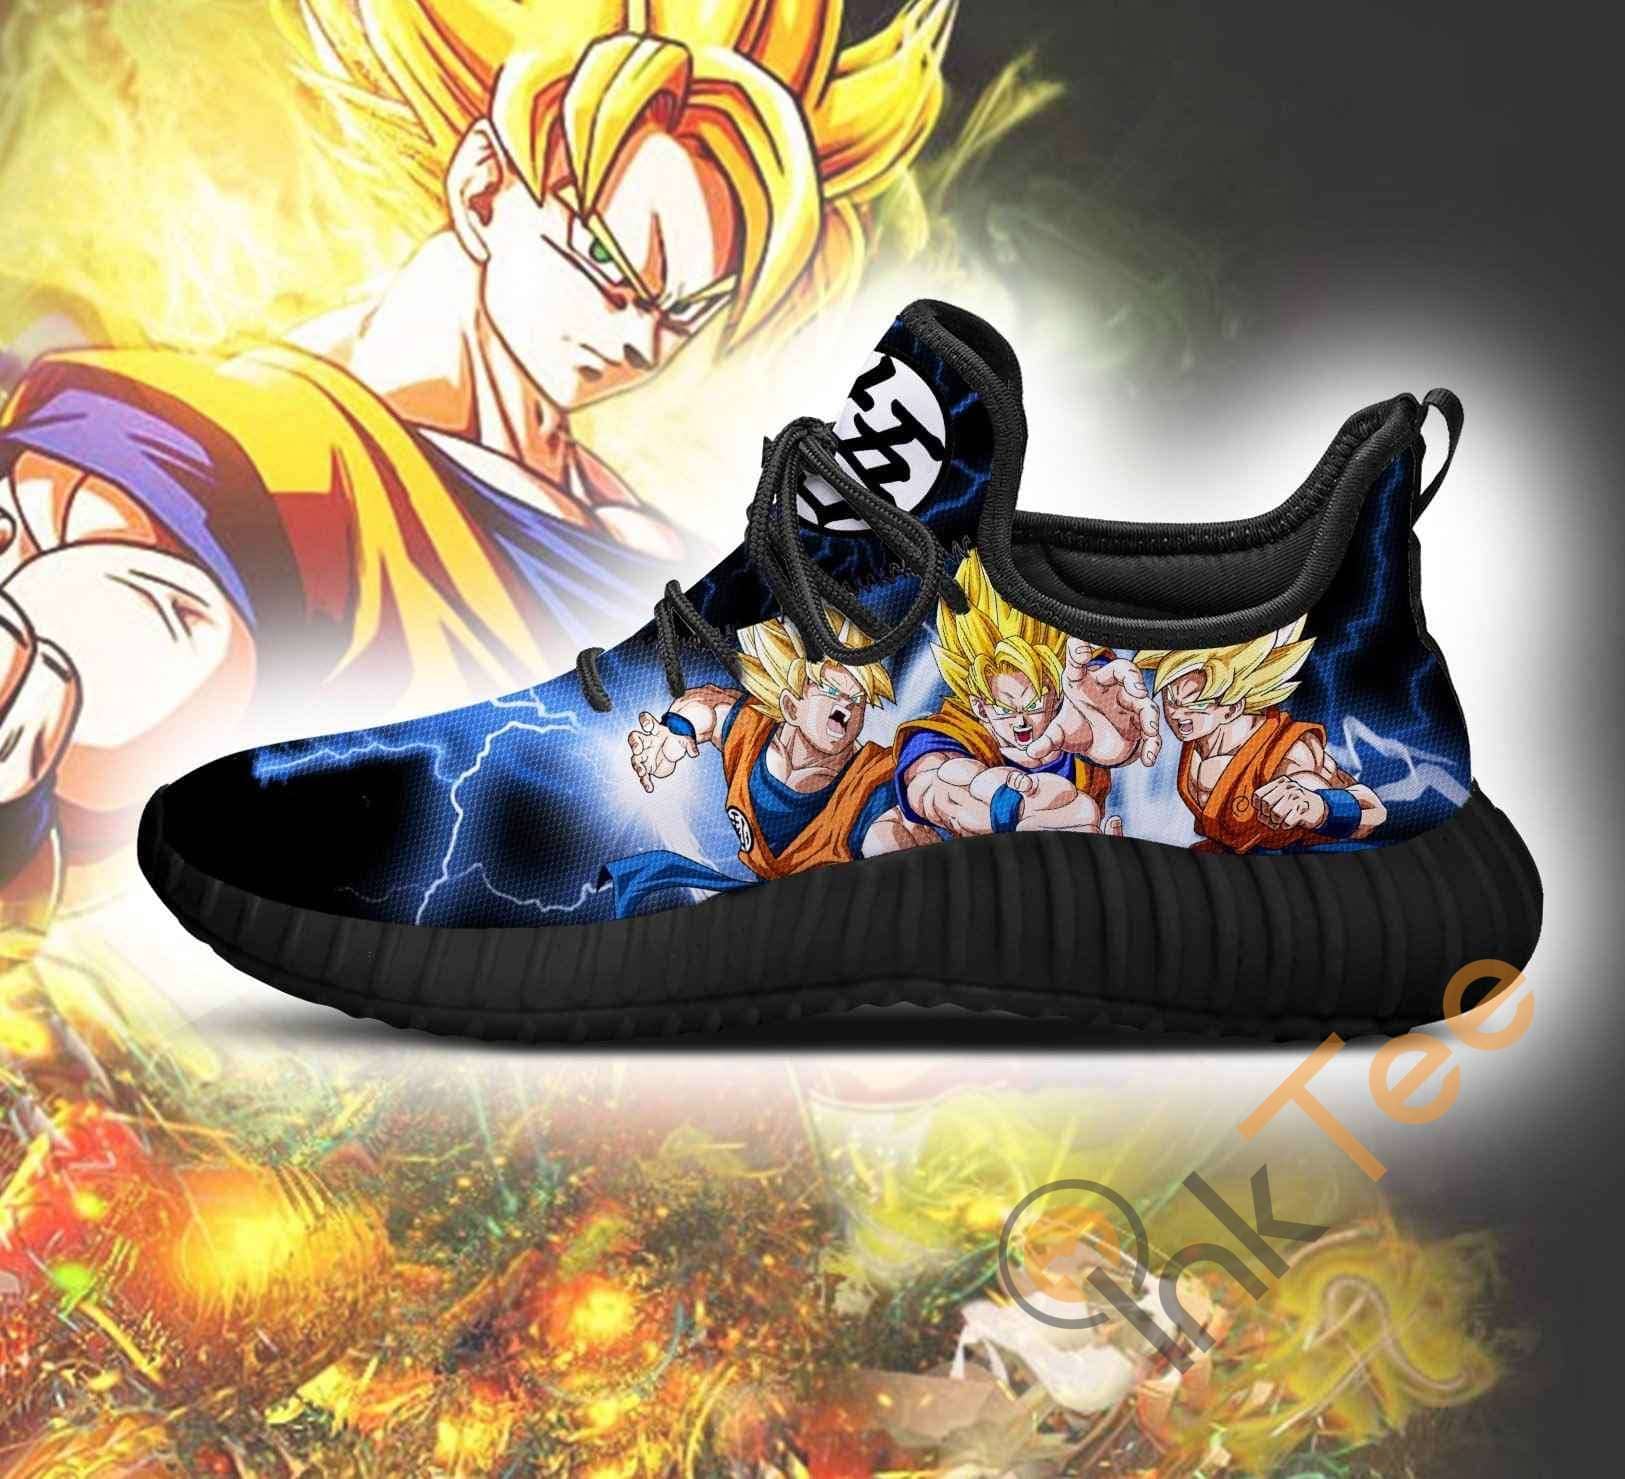 Inktee Store - Goku Super Saiyan Dragon Ball Anime Reze Shoes Image